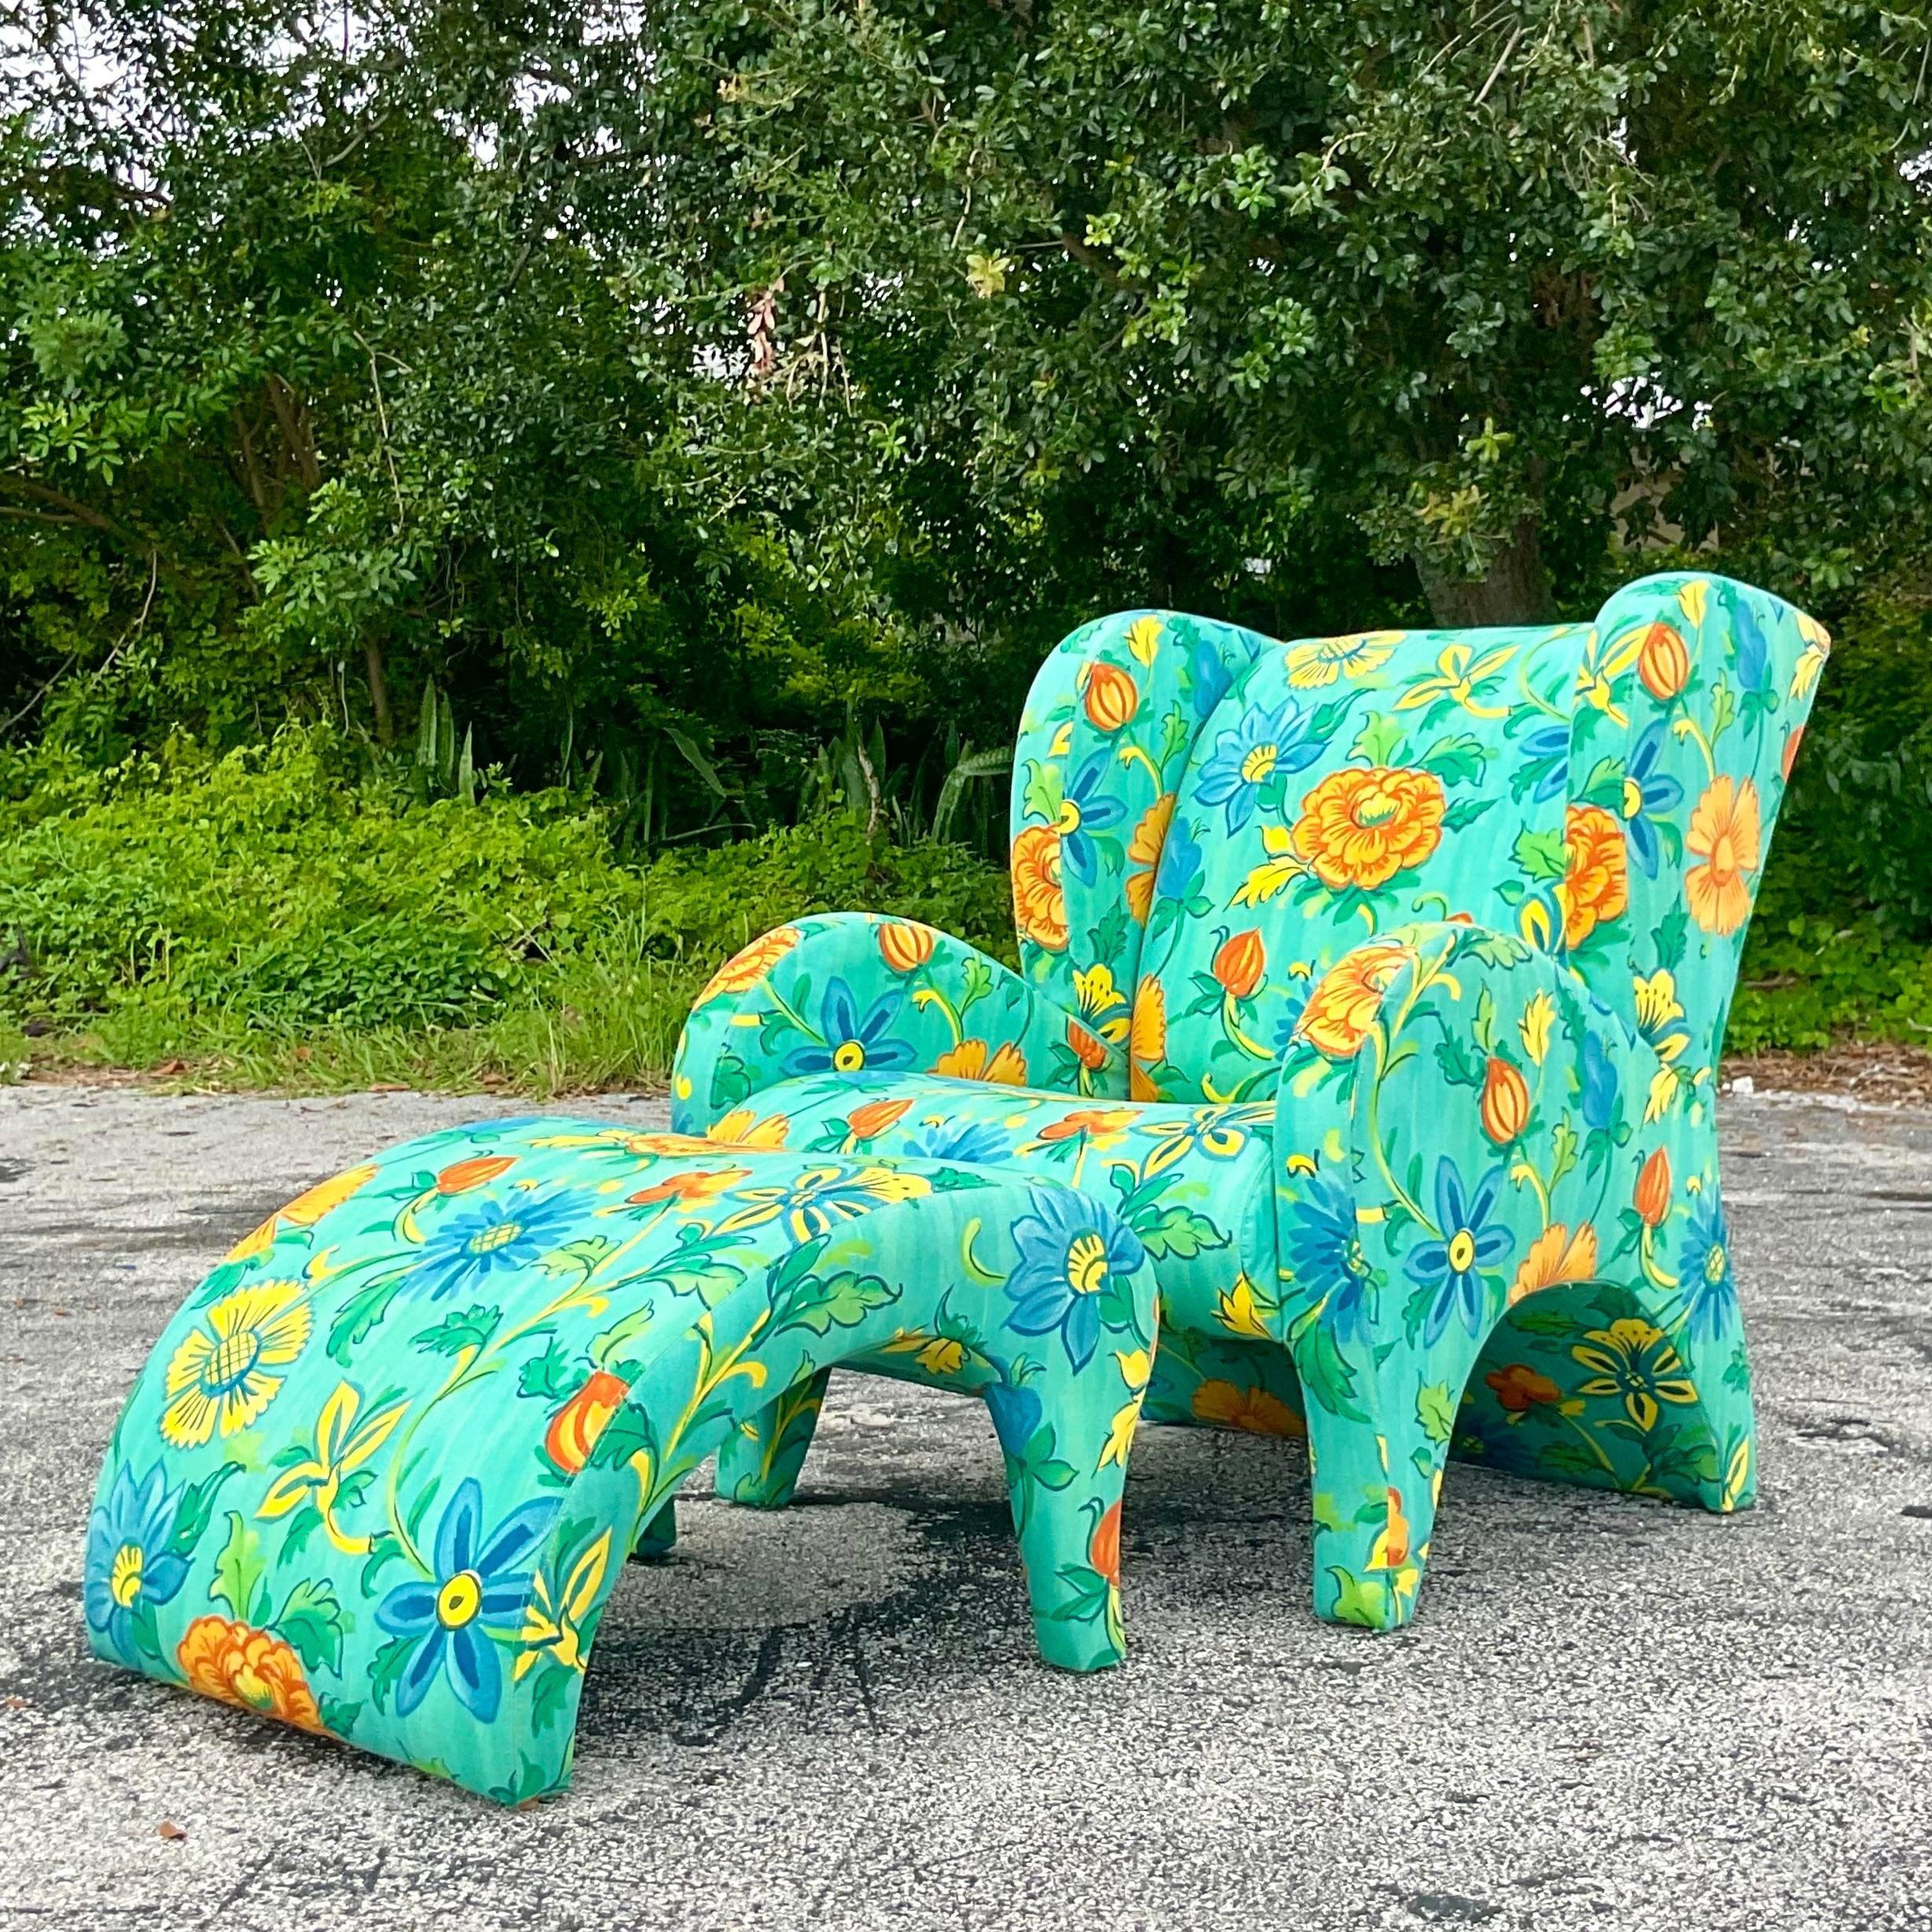 Un fabuleux ensemble chaise et ottoman Boho vintage. Fabriqué par le groupe emblématique Thayer Icone et étiqueté sur le fond. Un magnifique imprimé floral lumineux sur une forme postmoderne. Acquis d'une propriété de Palm Beach.

Dimensions du pouf